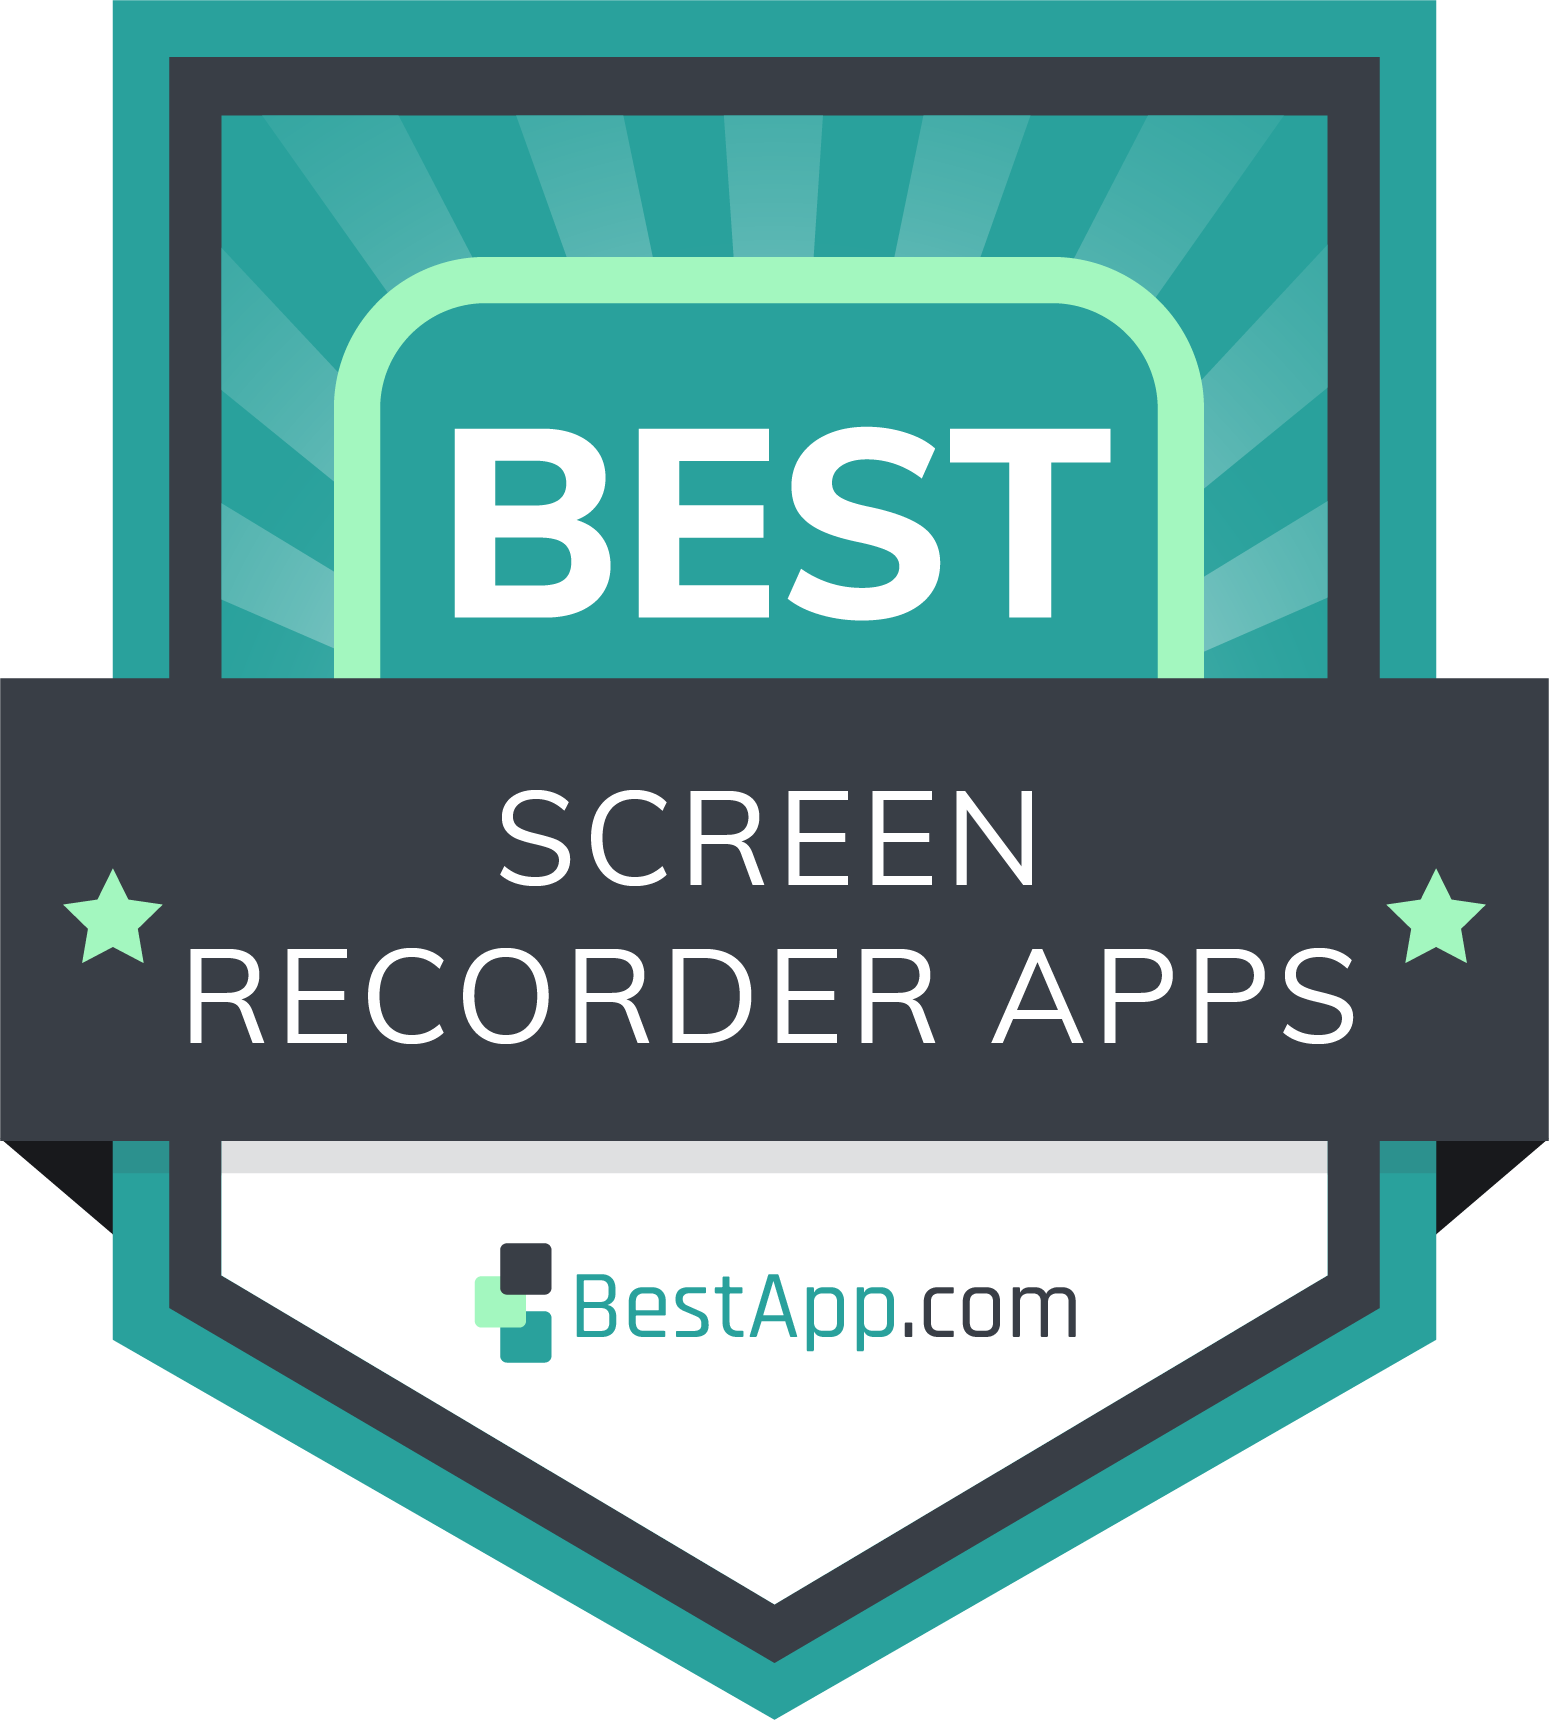 Best Screen Recorder Apps Badge